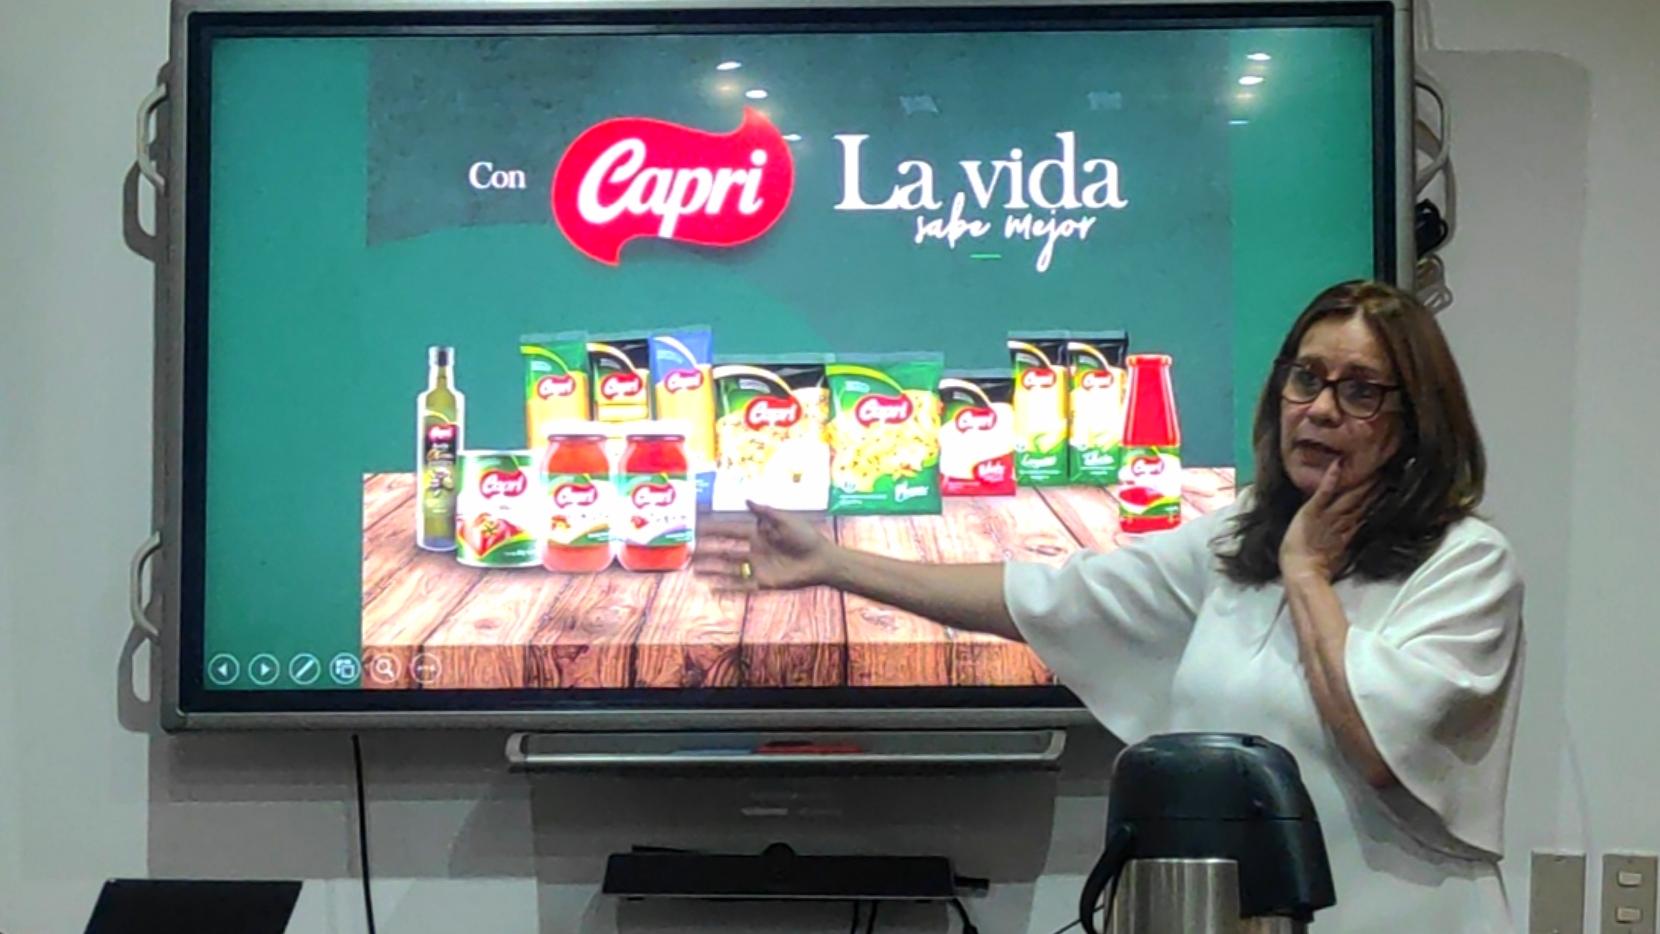 Capri celebra 70 años con un portafolio ampliado de productos (FOTOS)